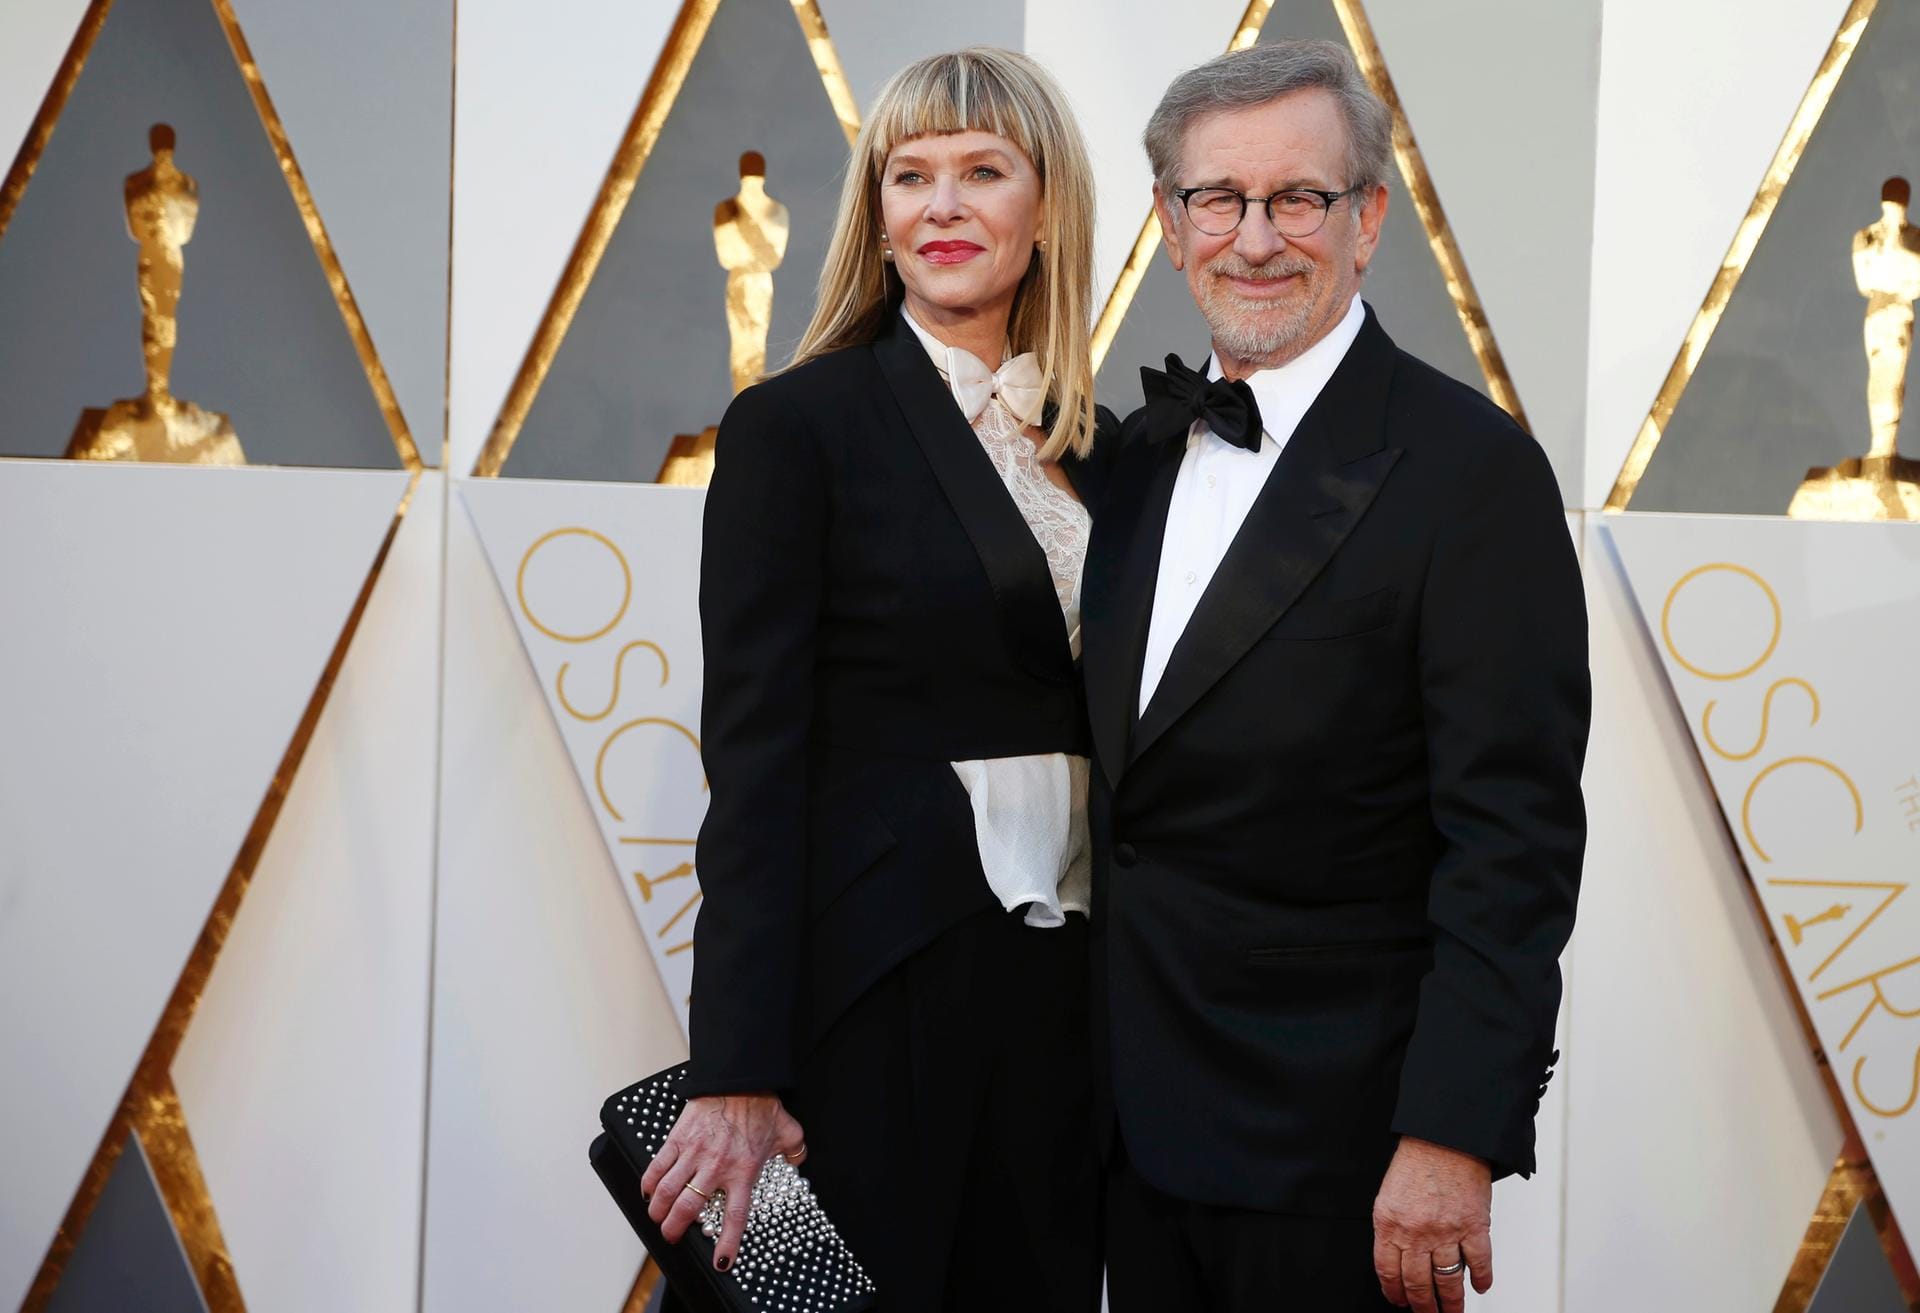 Steven Spielbergs Ehefrau Kate Capshaw kam wie ihr Mann in einer Art Smoking - erweckte aber einen etwas derangierten Eindruck, als hätte sie keine Zeit mehr gehabt, sich in Ruhe anzuziehen.